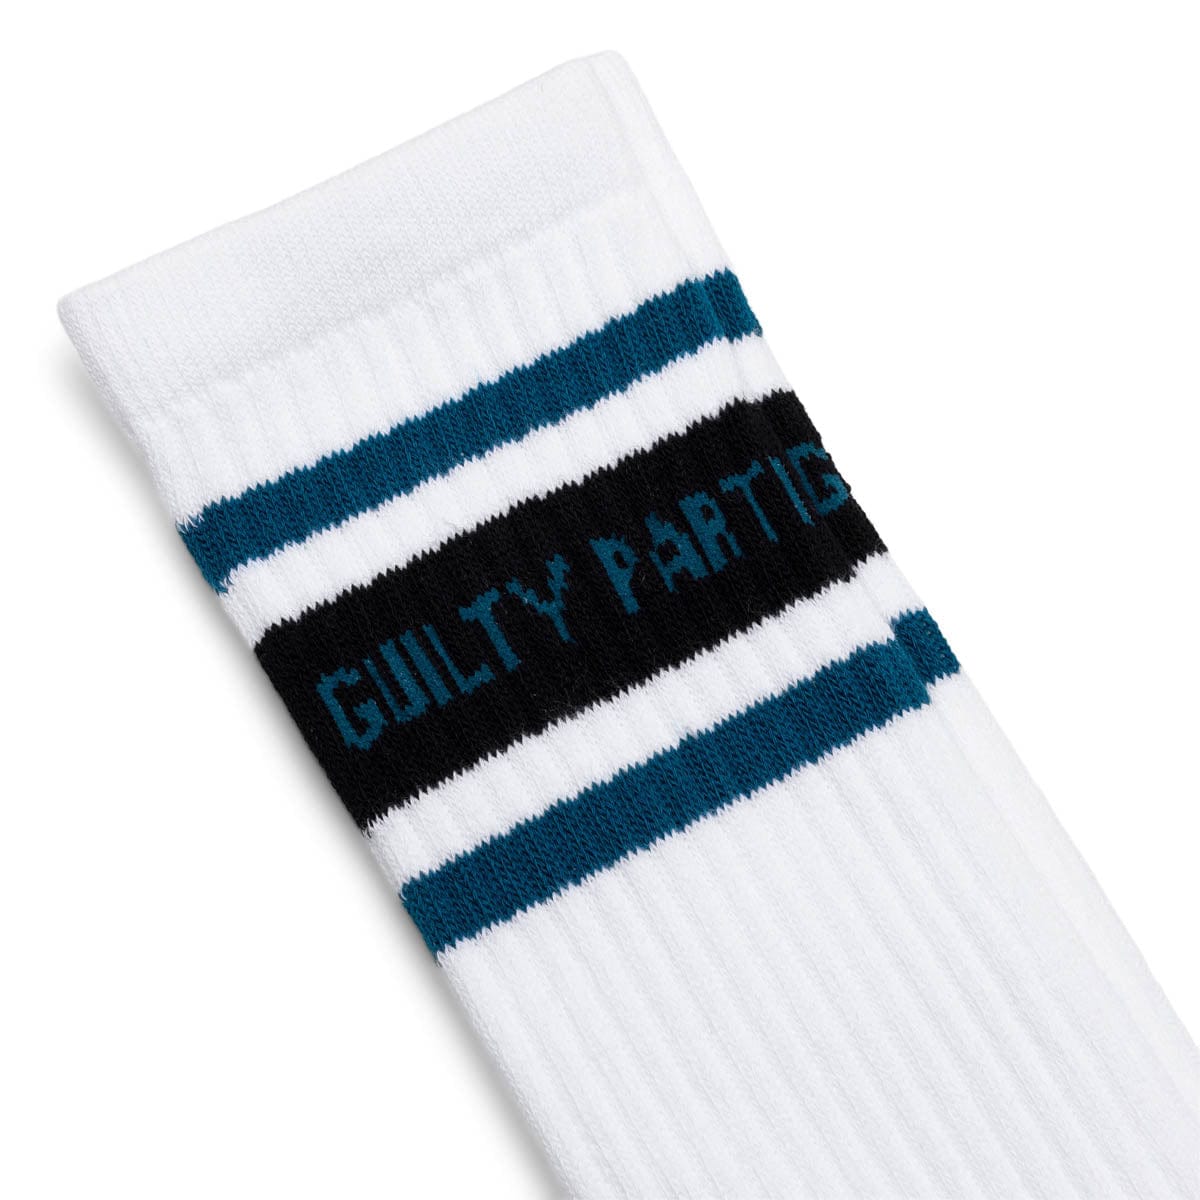 Wacko Maria Socks WHITE/BLUE / O/S SKATER SOCKS ( TYPE-2 ) White/Blue